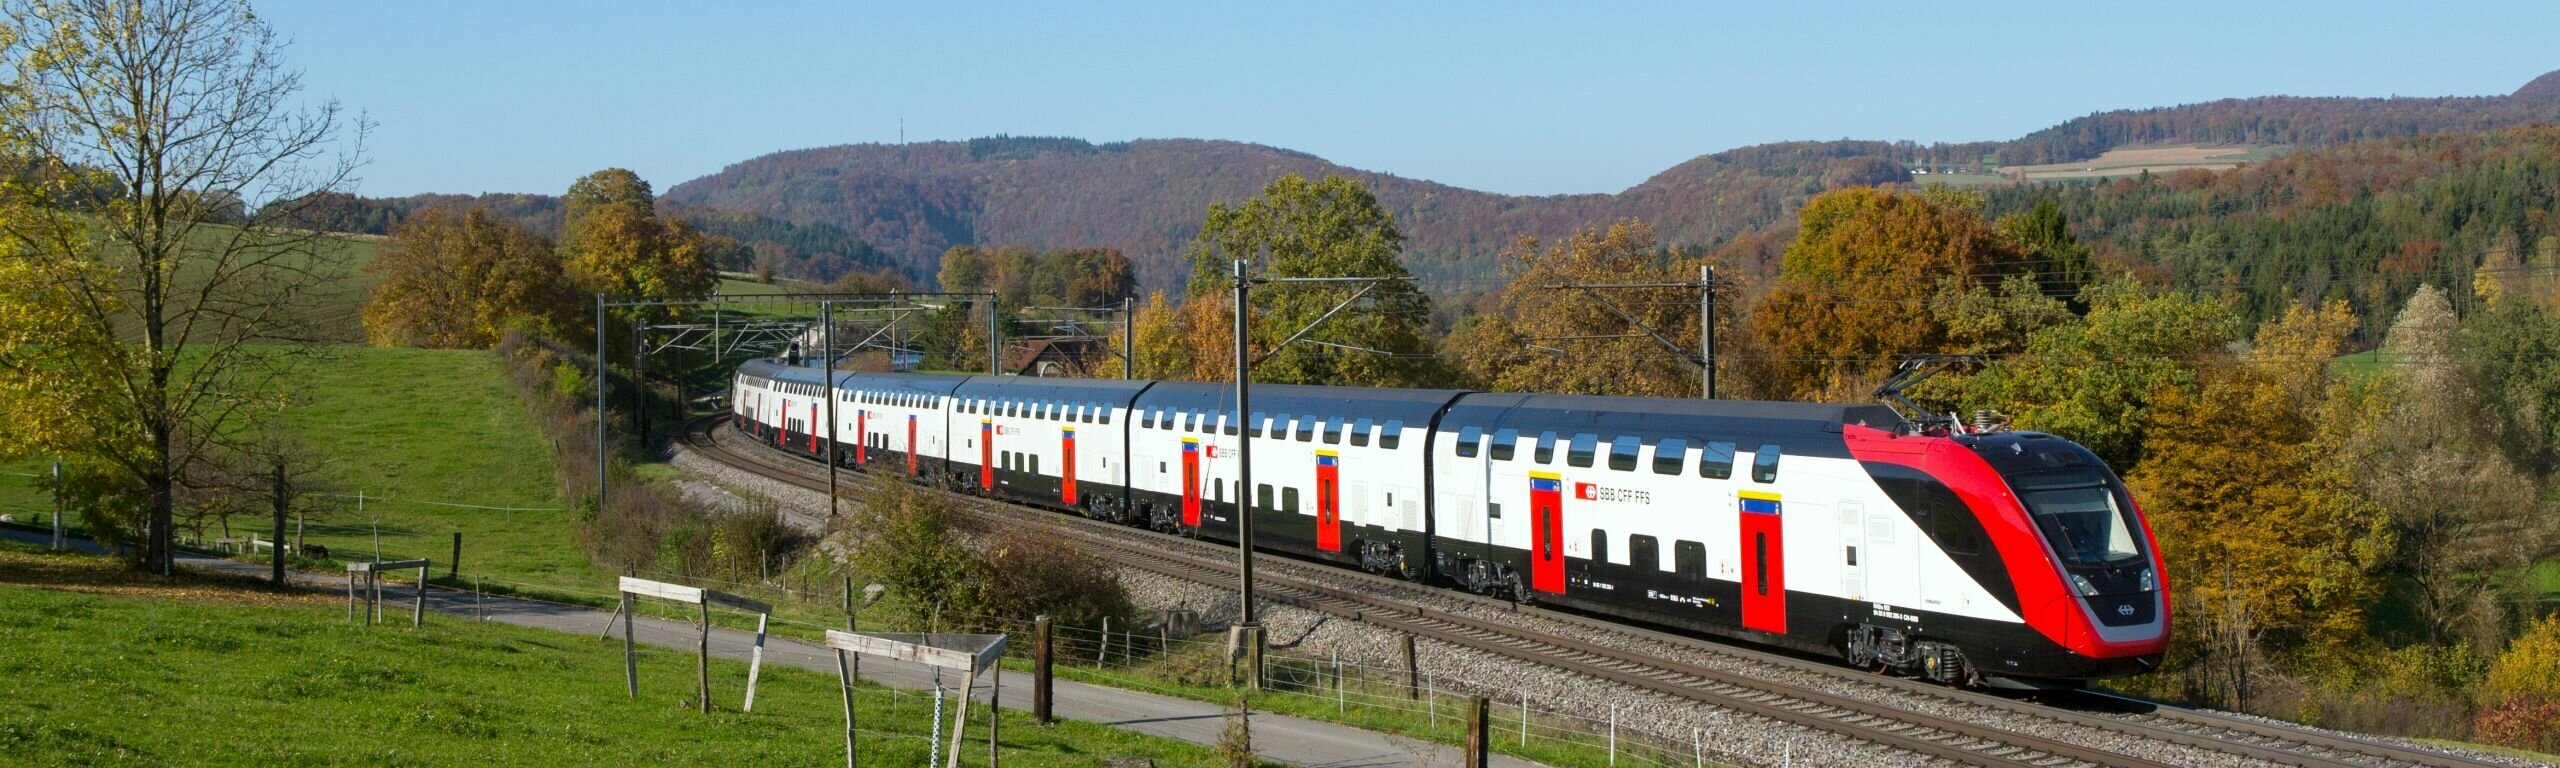 Un train Dublex TGL dans un paysage d’automne